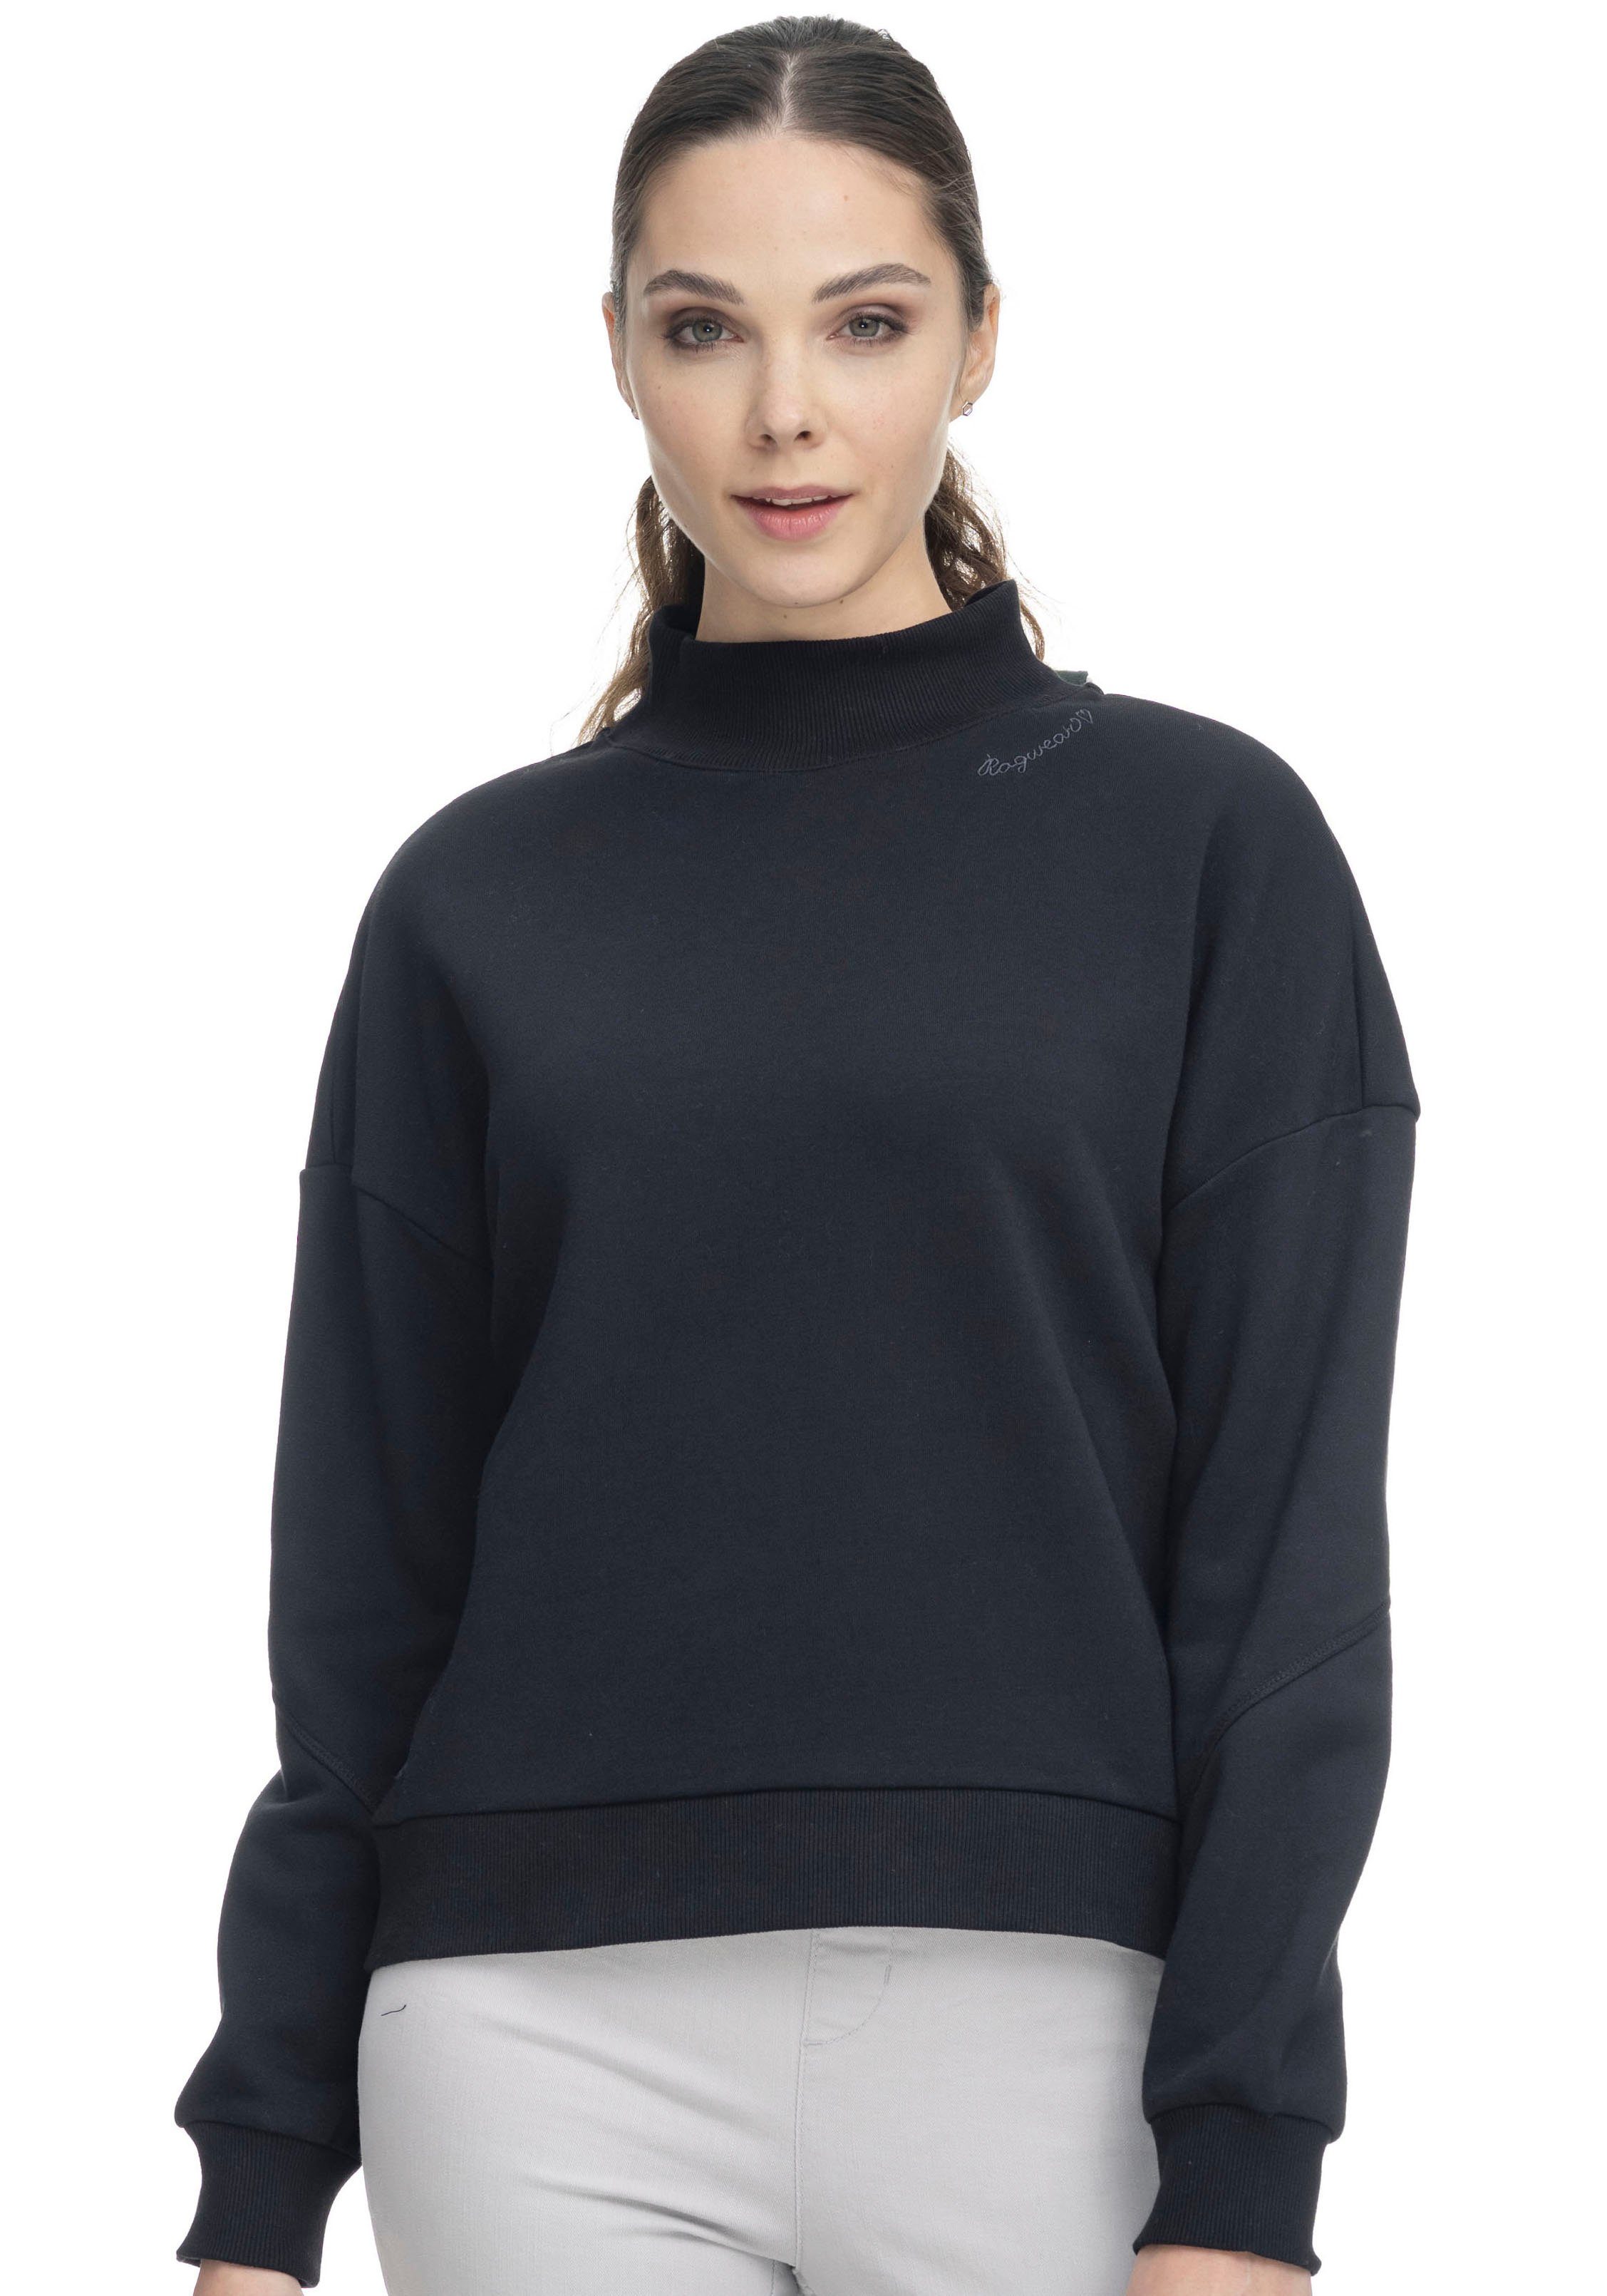 SWEAT black Sweater 1010 Ragwear KAILA